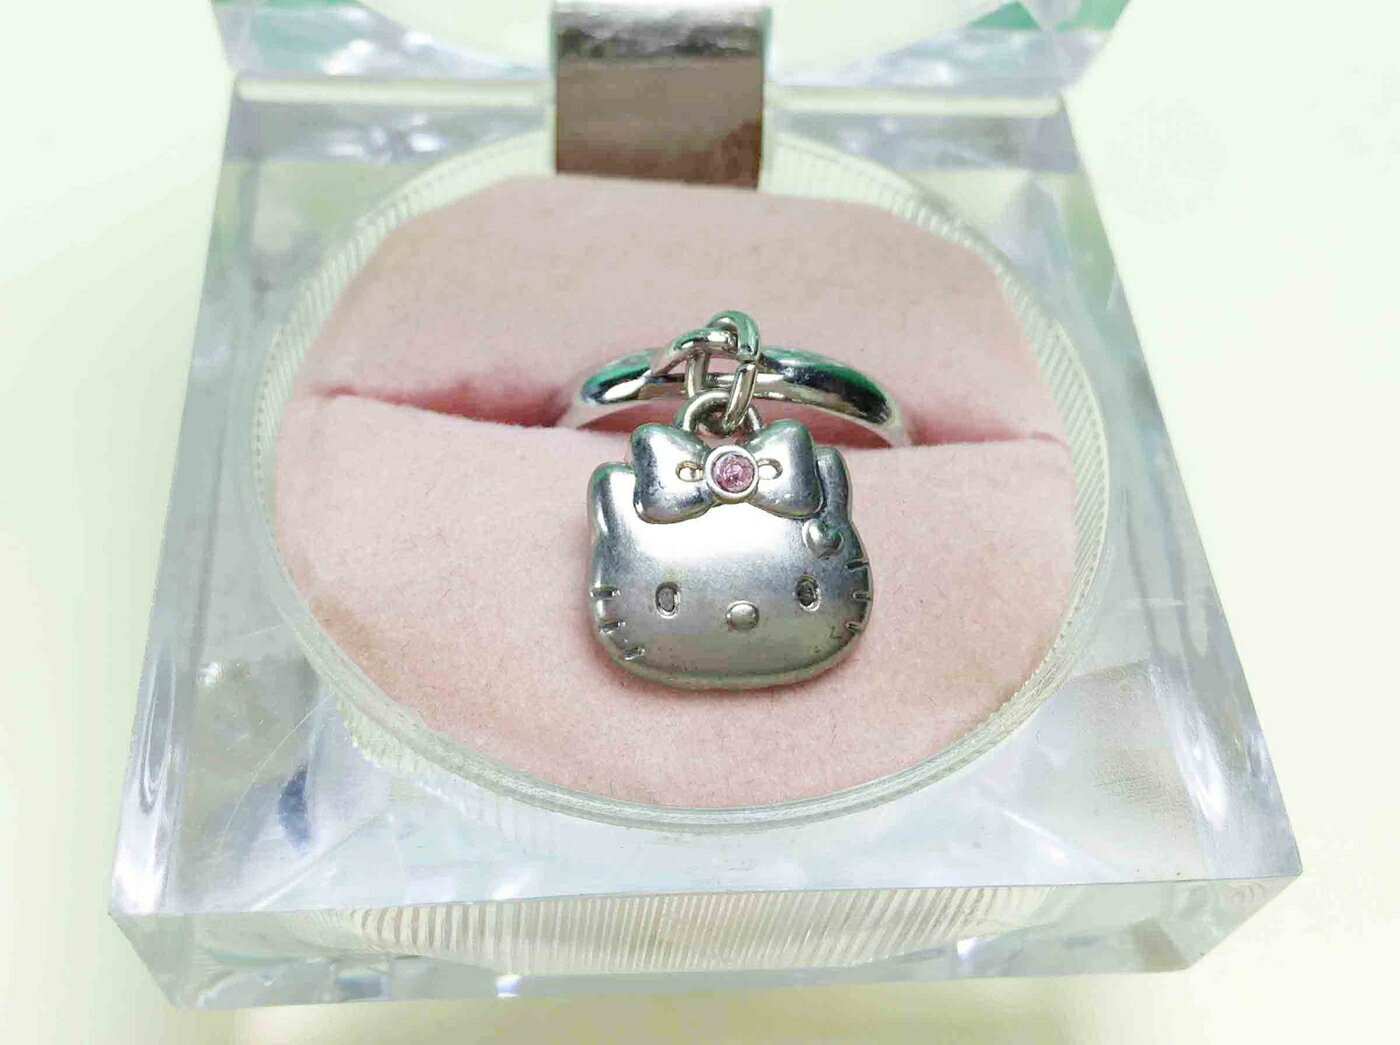 【震撼精品百貨】Hello Kitty 凱蒂貓 戒指-臉 震撼日式精品百貨